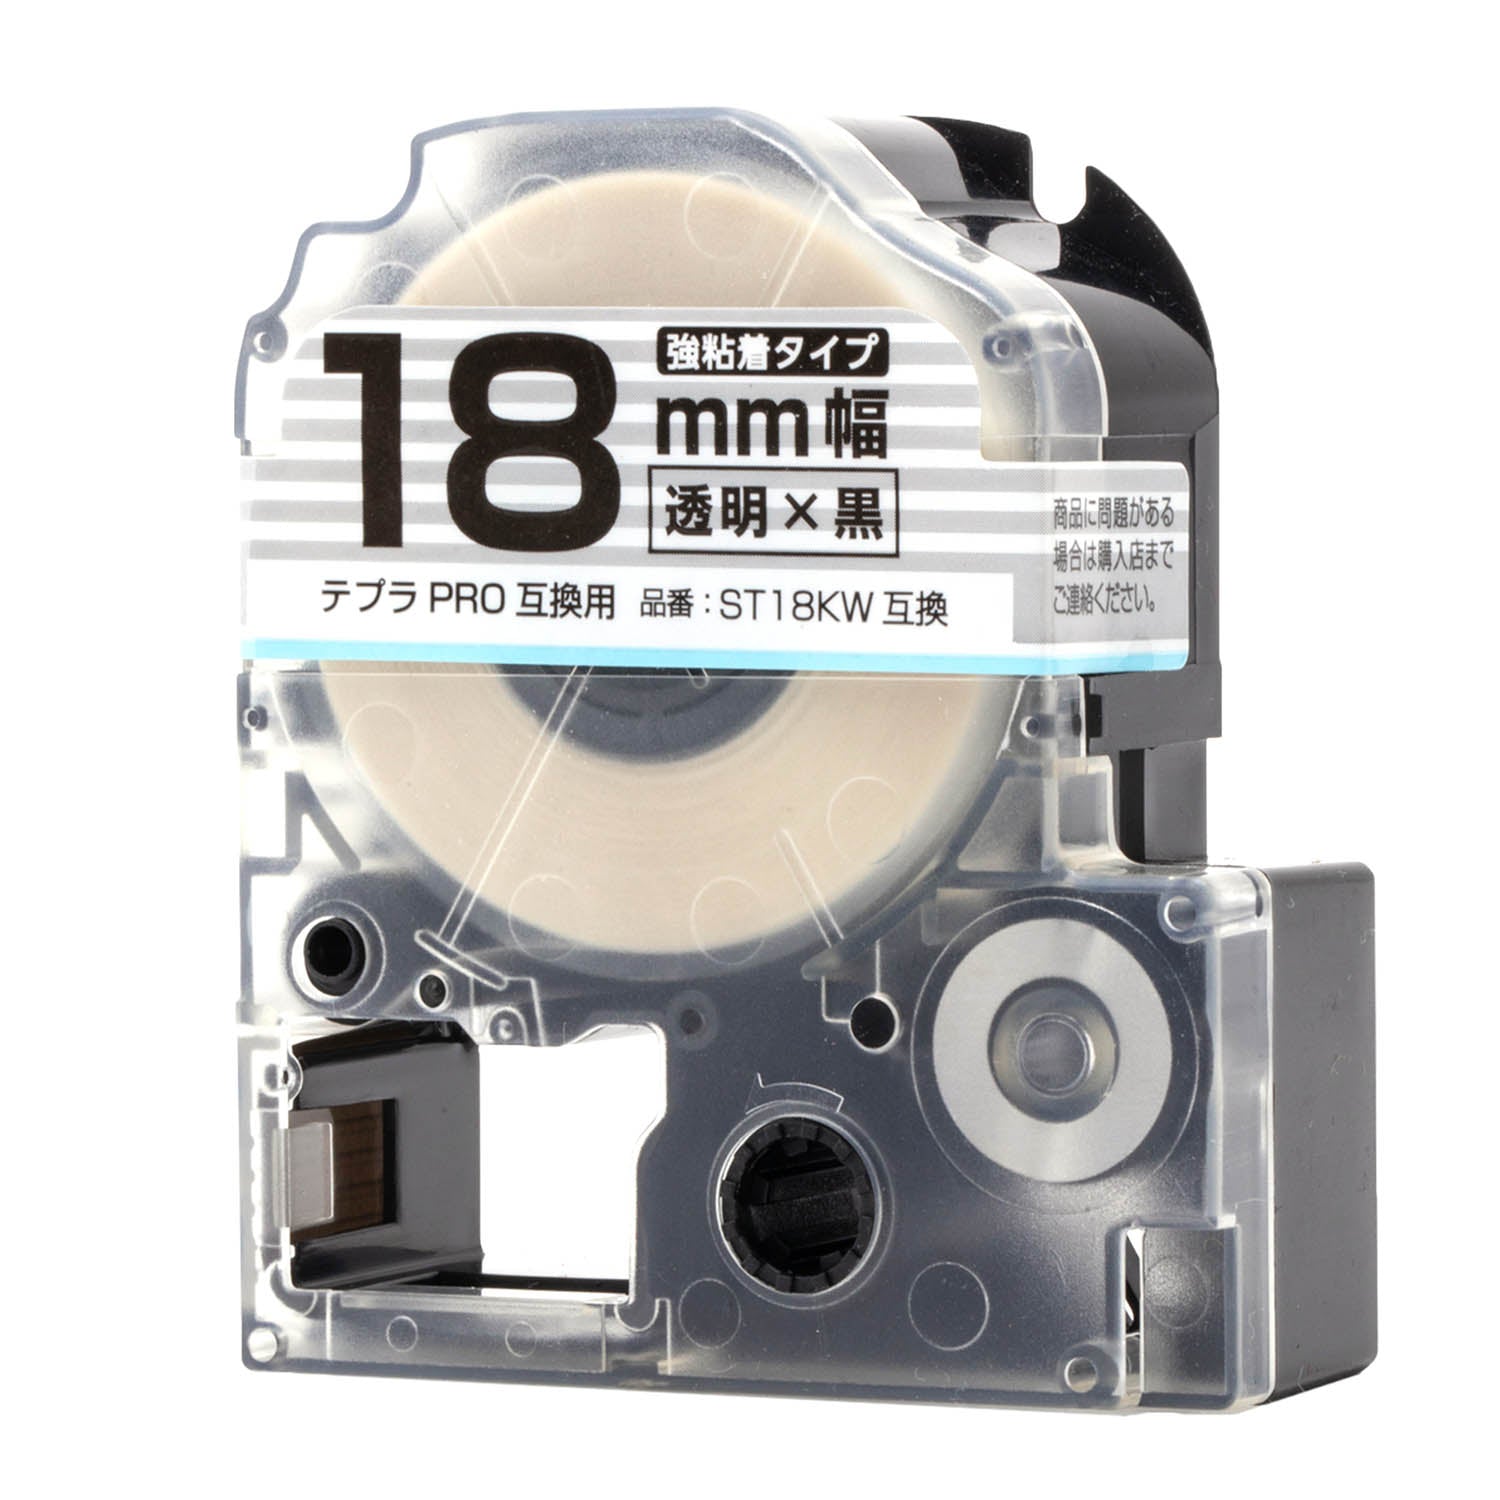 テプラPRO用互換テープカートリッジ 透明×黒文字 18mm